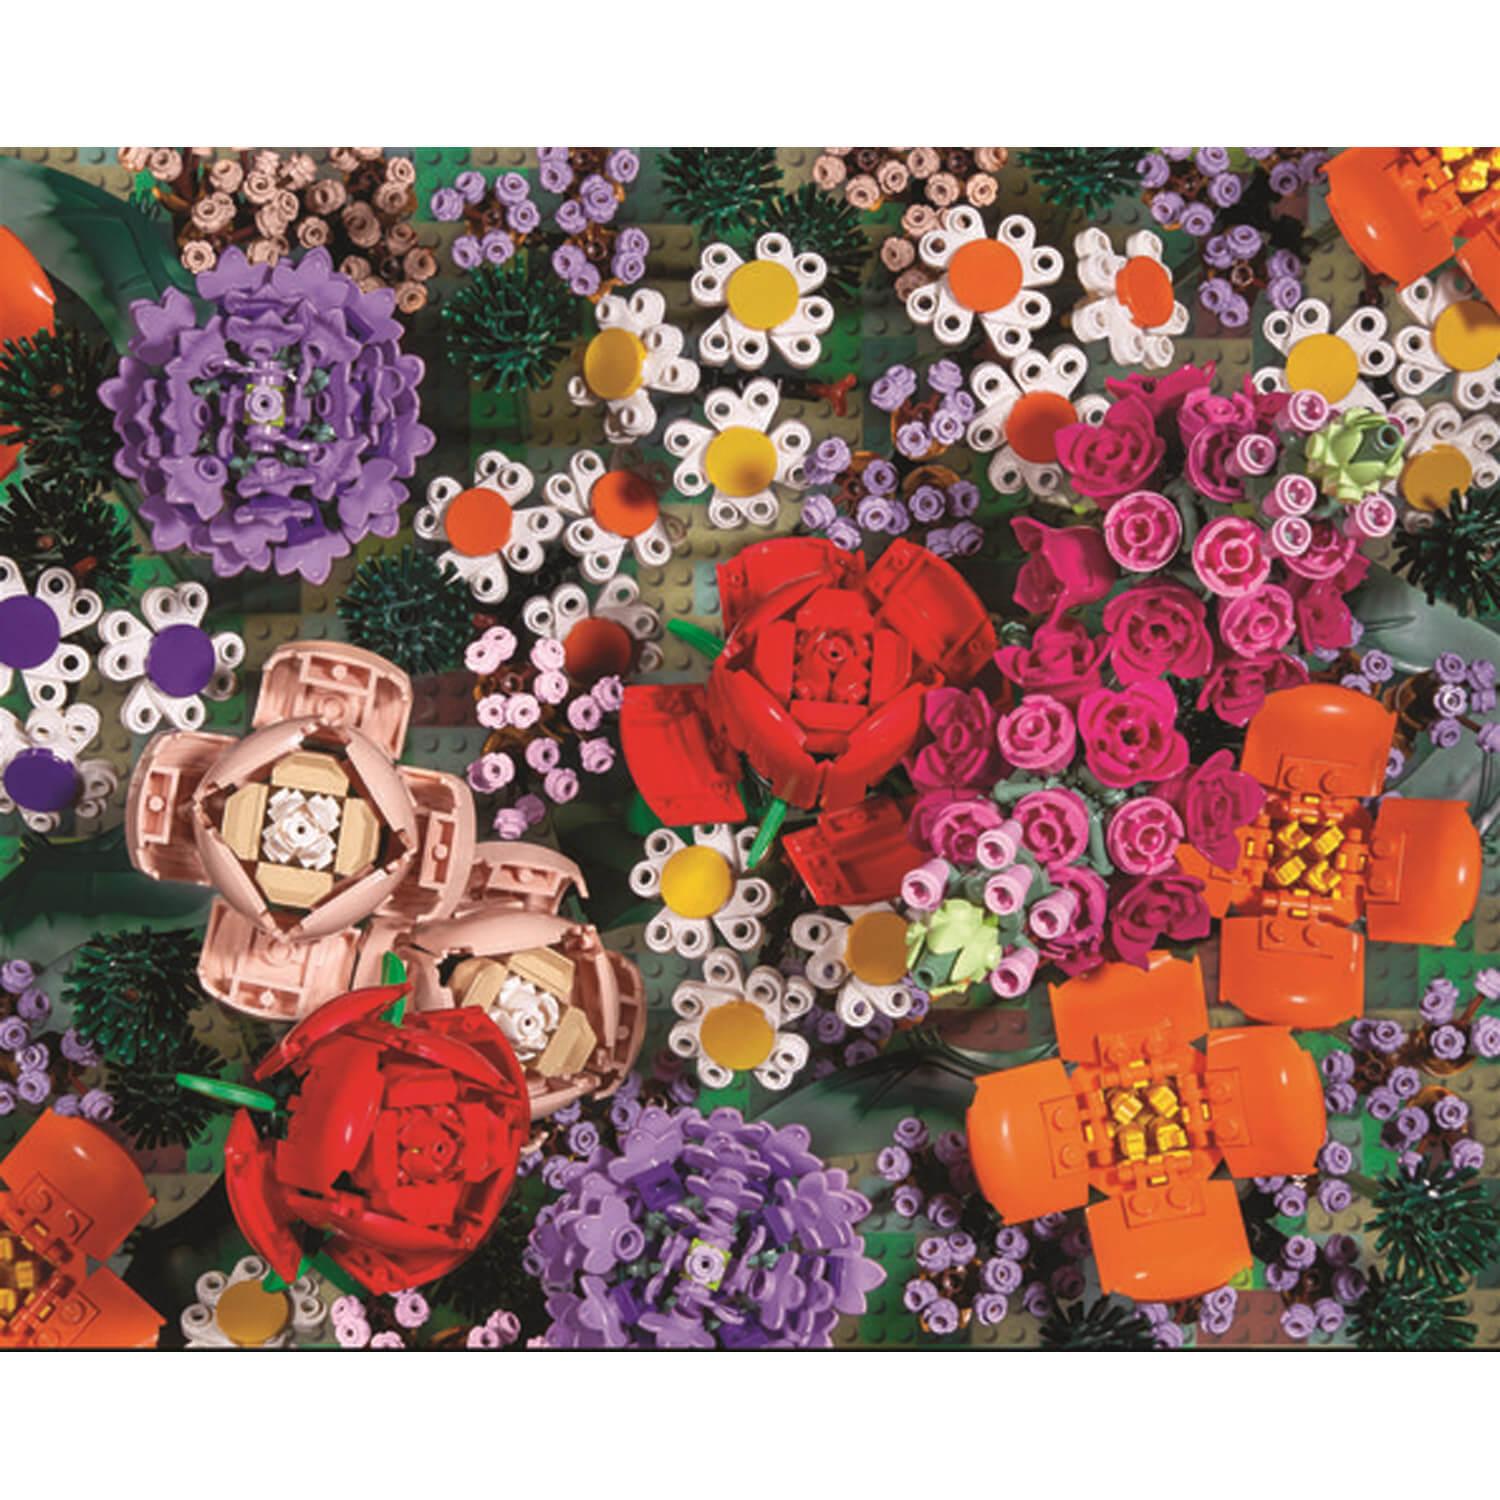 Puzzle 1000 pièces : Fleurs en briques LEGO - Galison - Rue des Puzzles